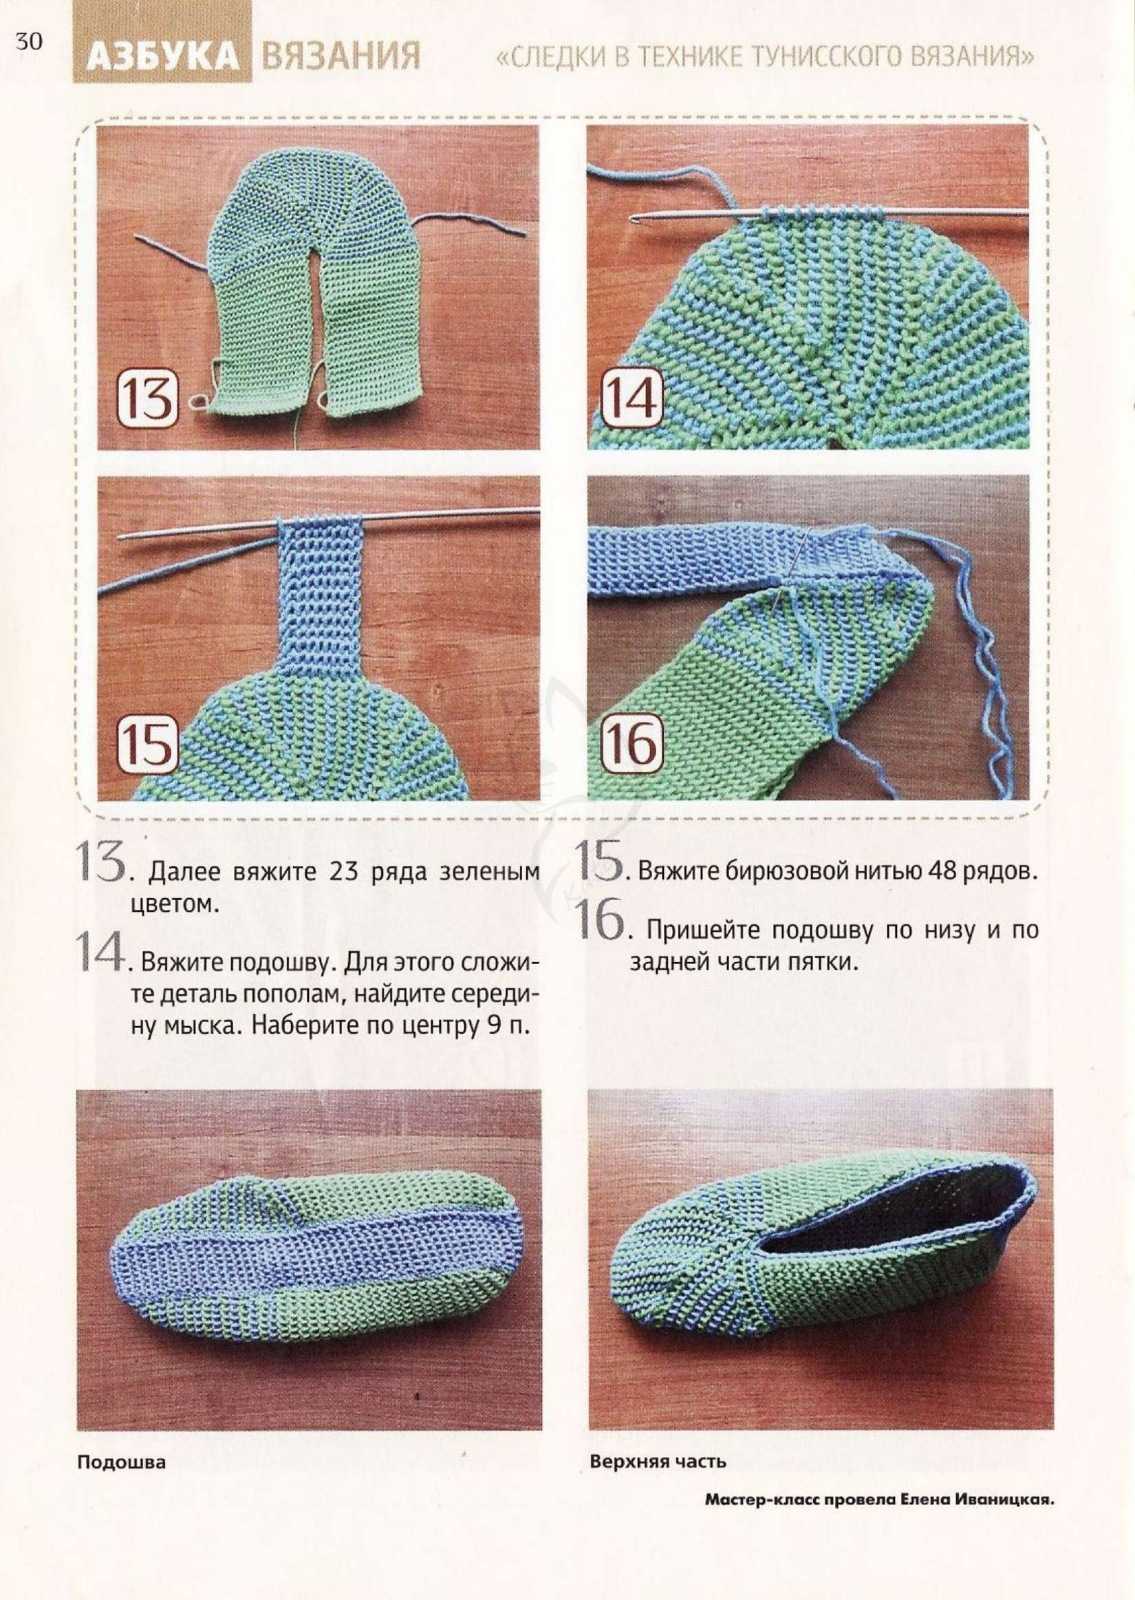 Вязание тапочек спицами для начинающих — идеи, пошаговые инструкции, фото идеи